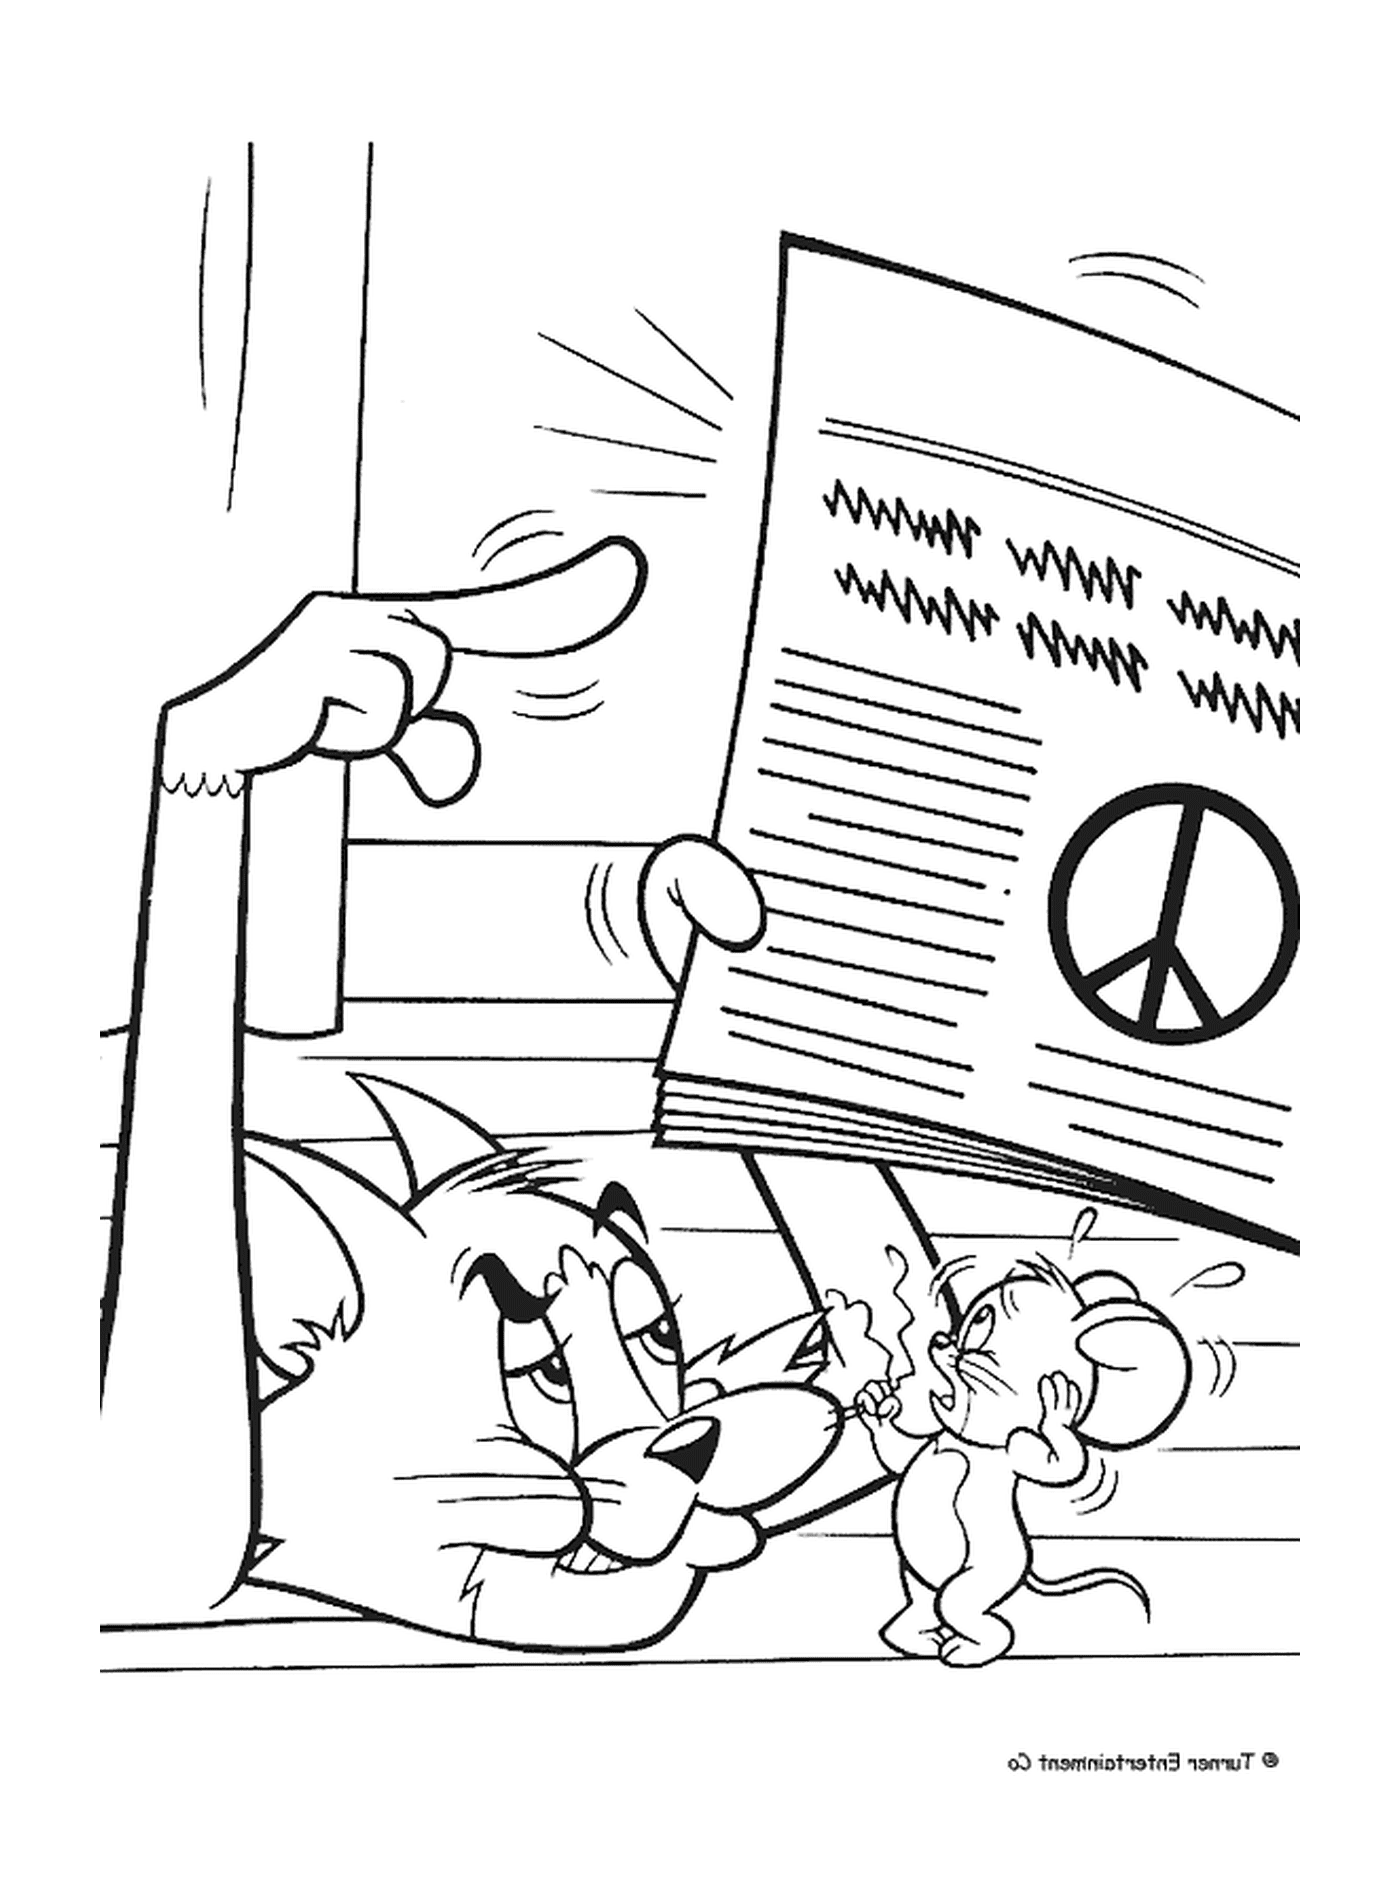  Tom zeigt Jerry das Friedens- und Liebeslogo 